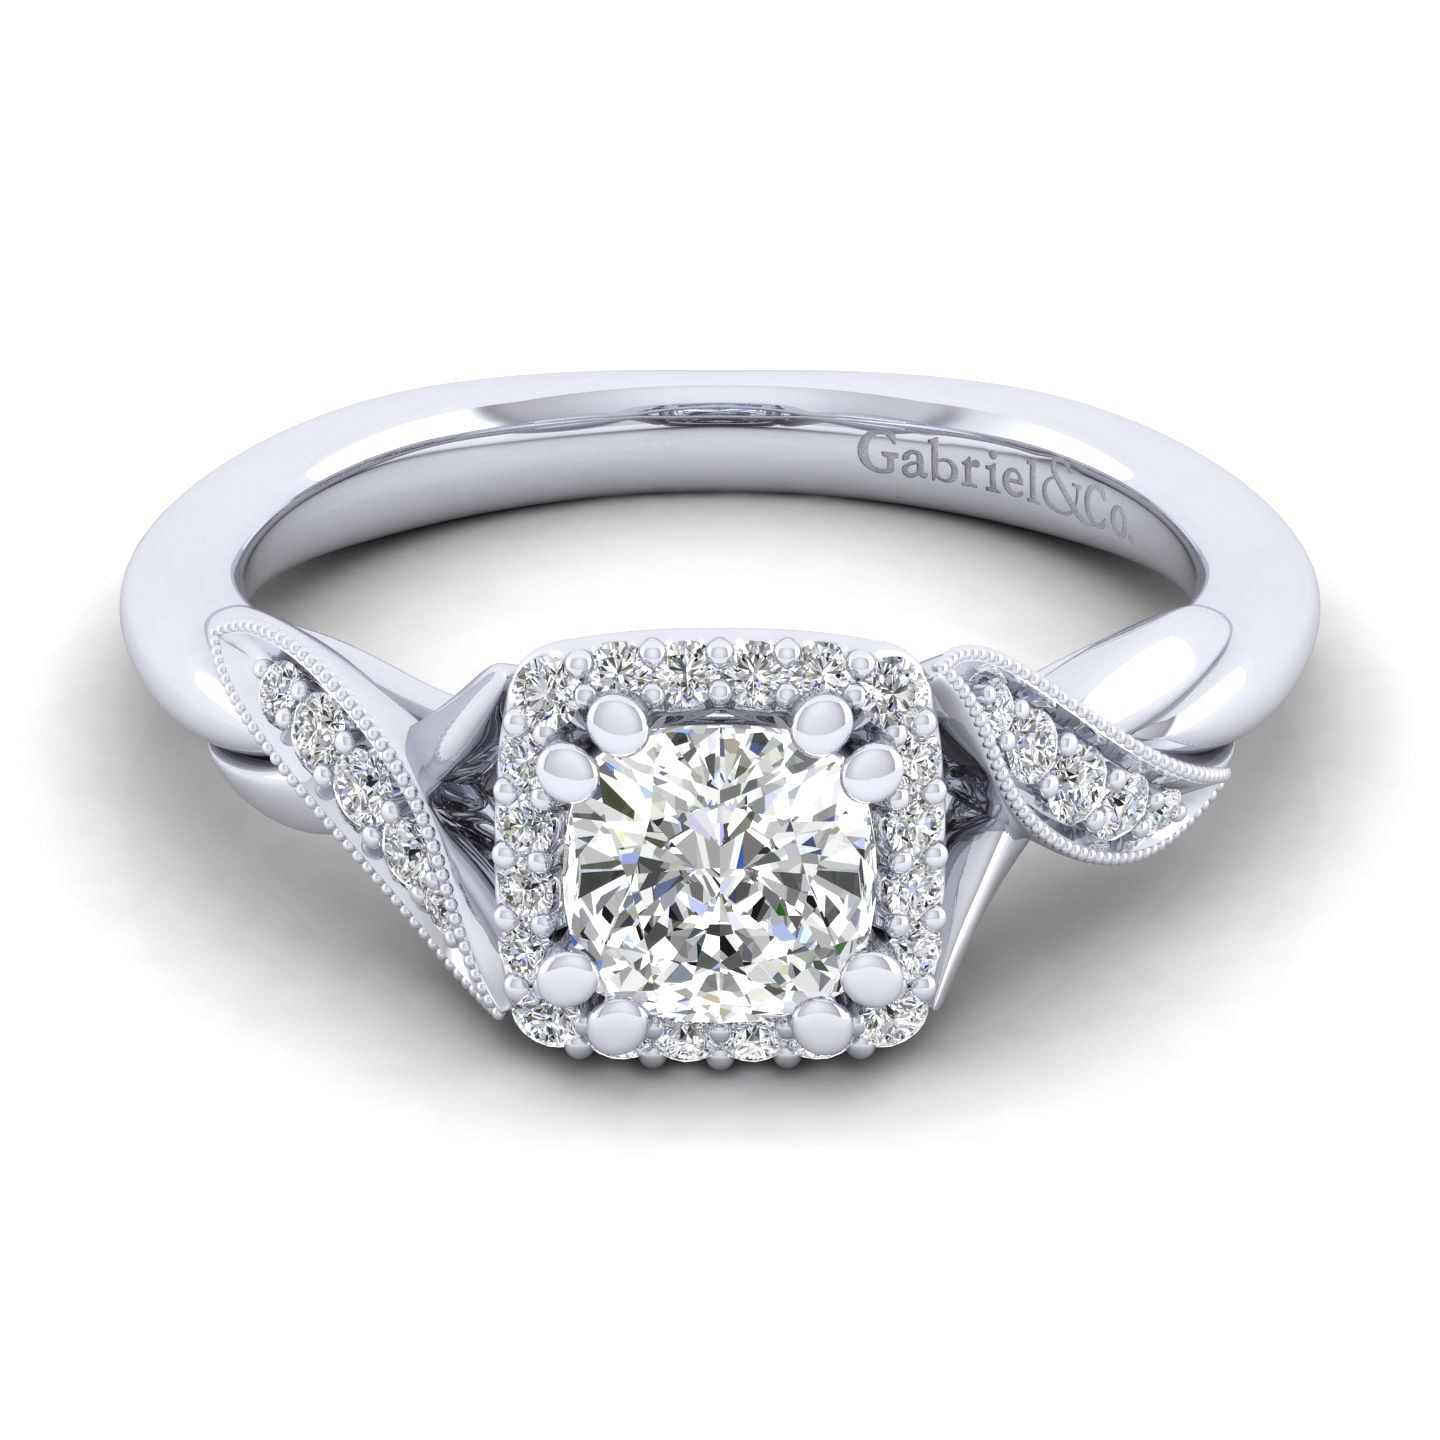 Shae - Vintage Inspired 14K White Gold Cushion Halo Diamond Engagement Ring